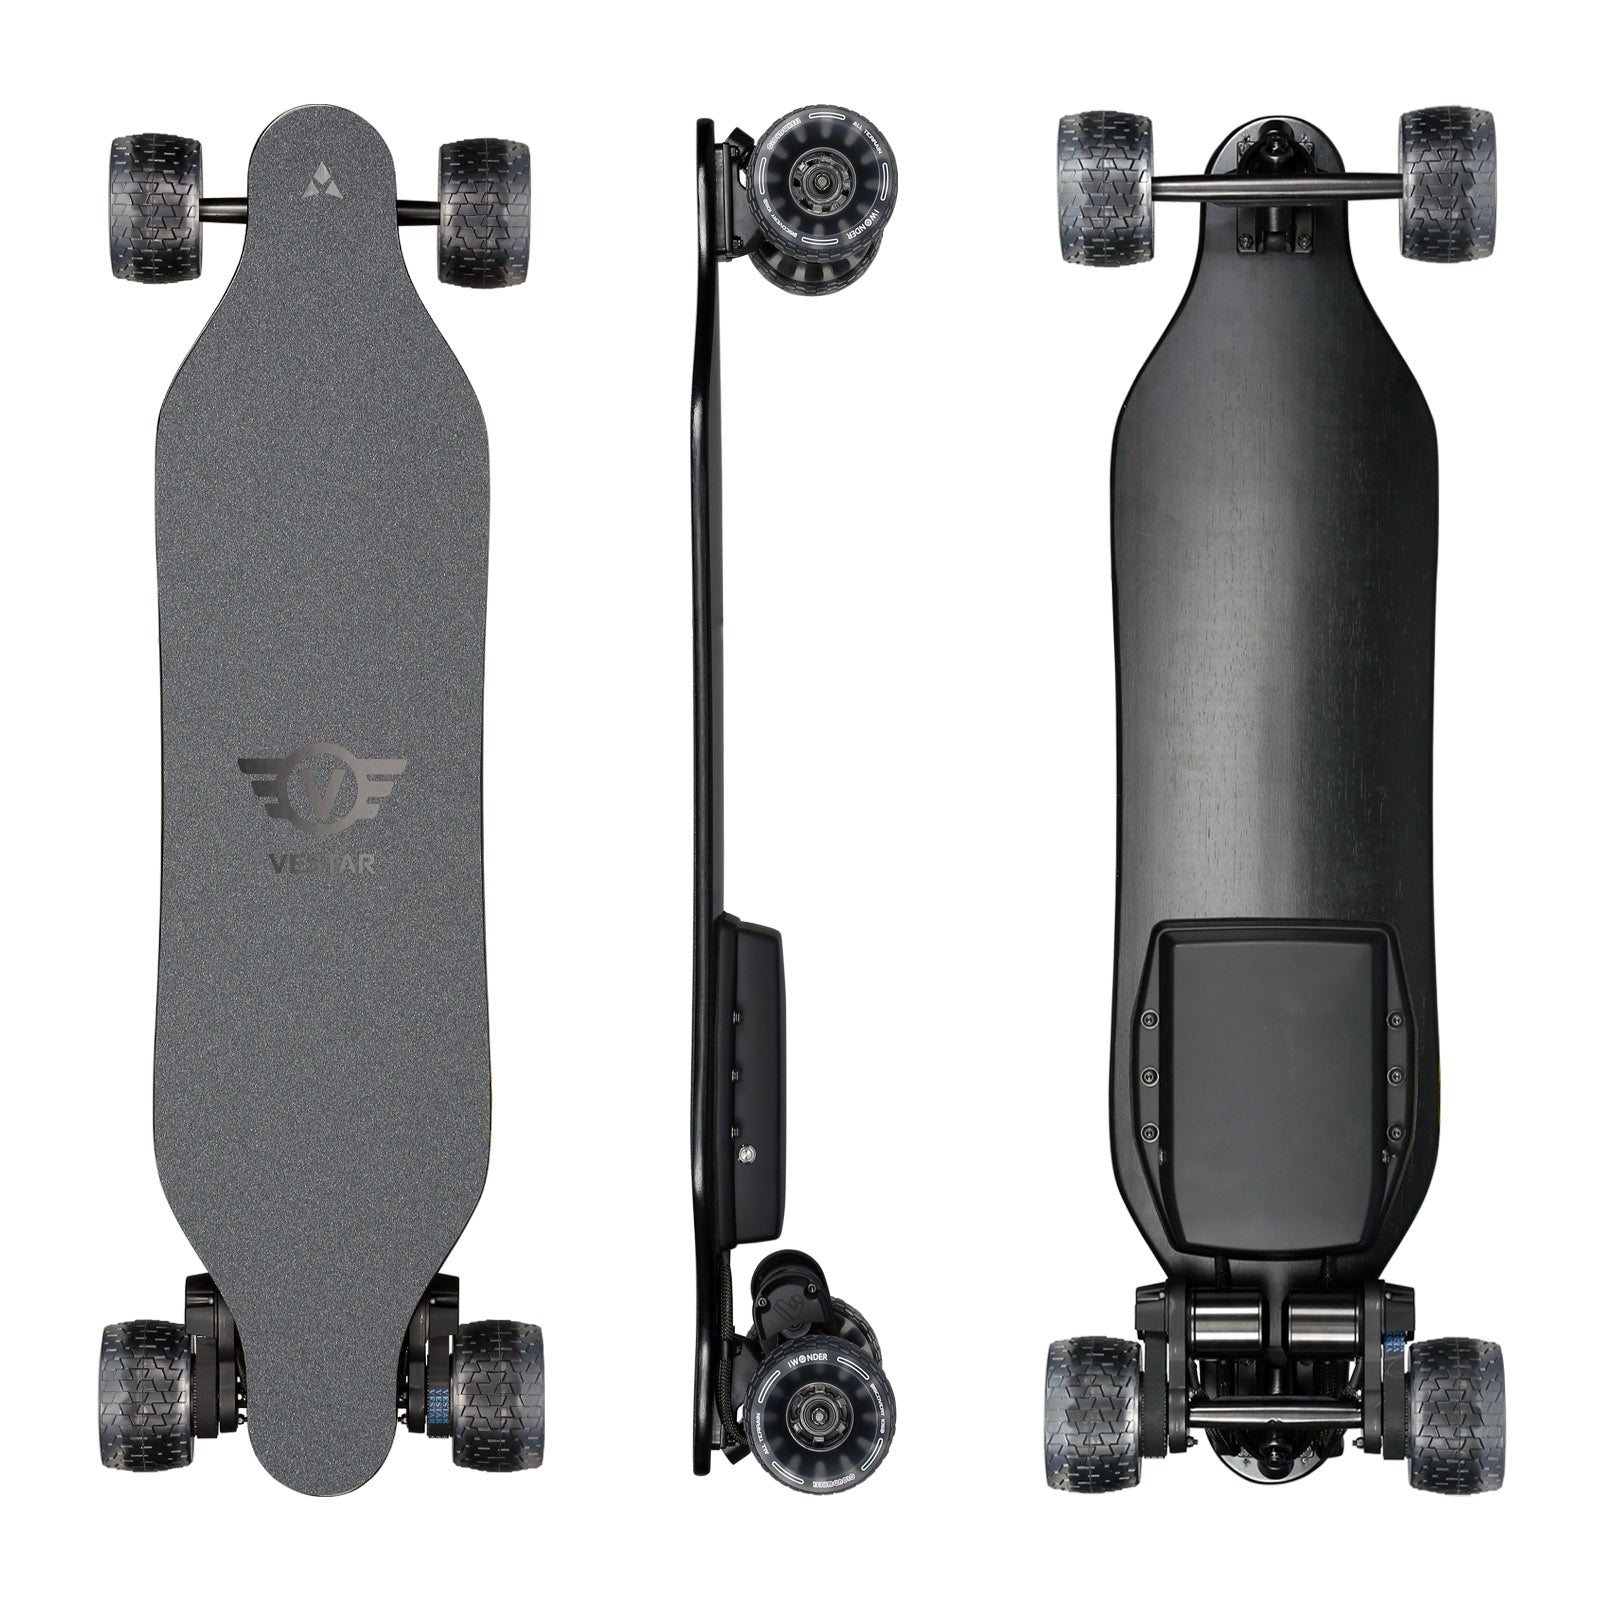 VESTAR V3 Bamboo Turbo - Vestar Skateboards